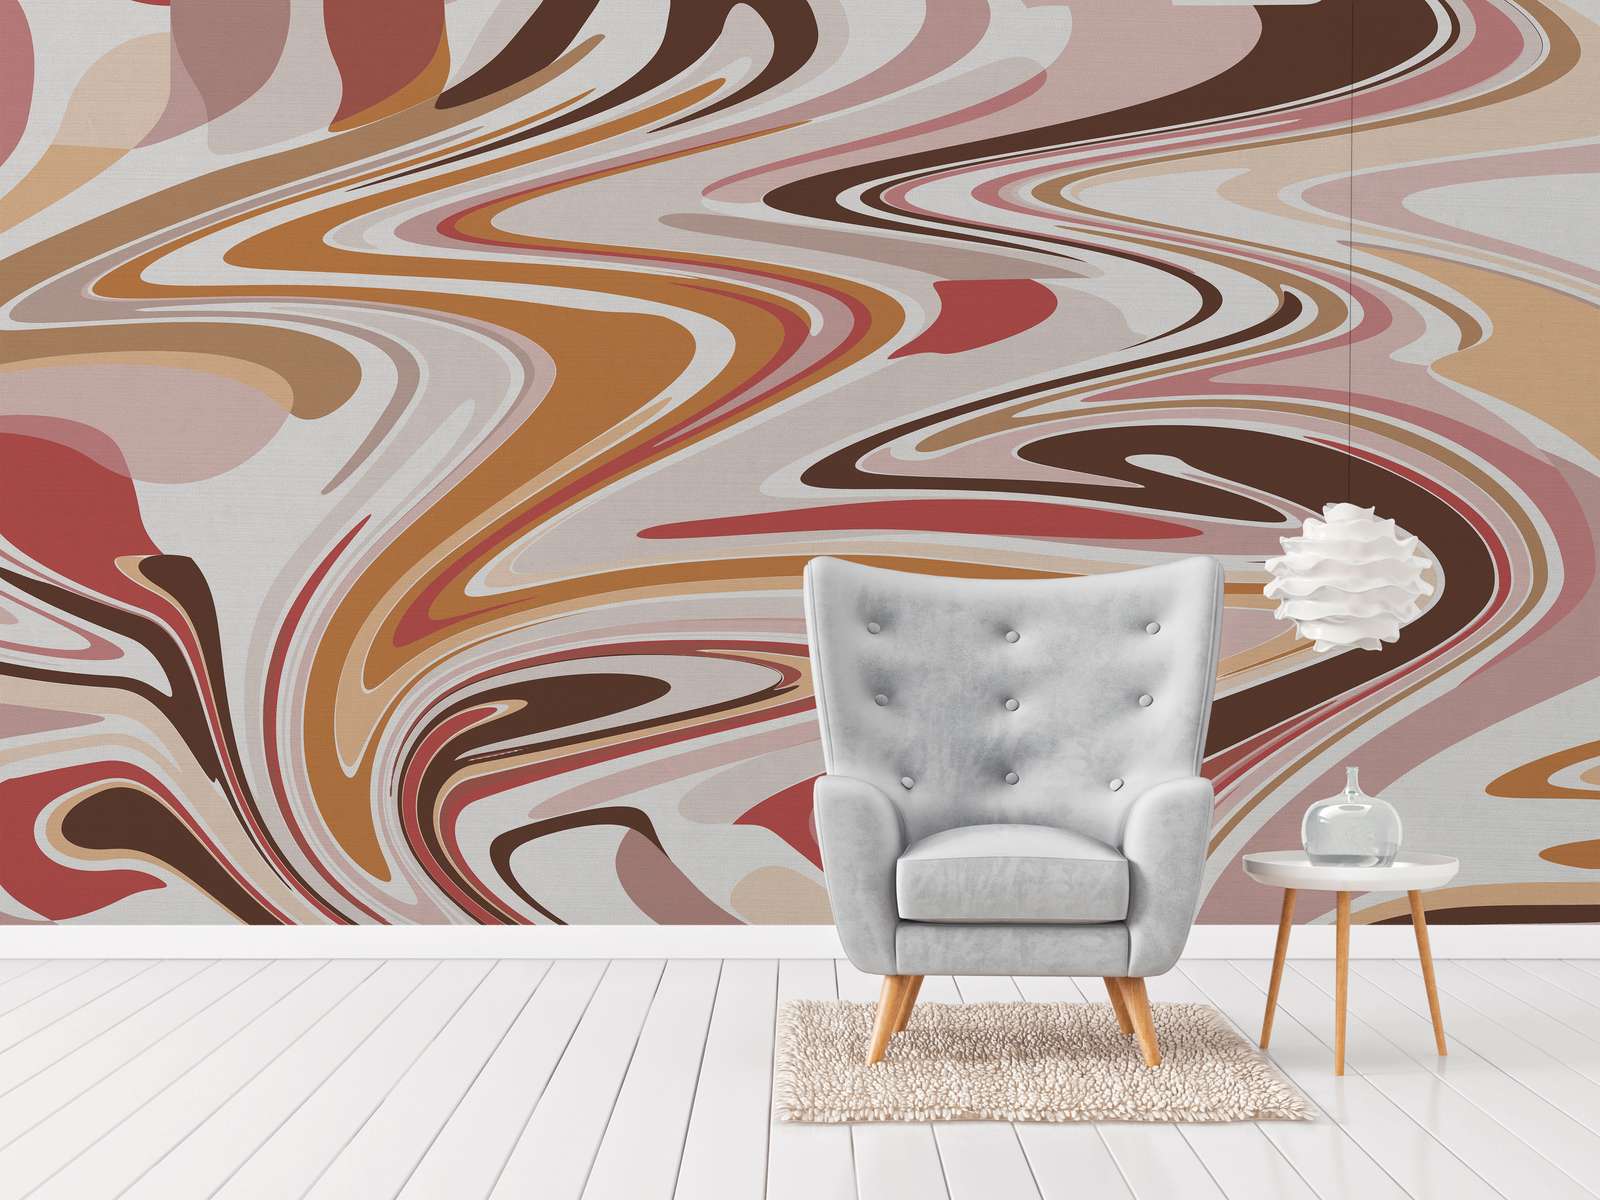             Digital behang met abstract kleurenpatroon in warme tinten - roze, beige, rood
        